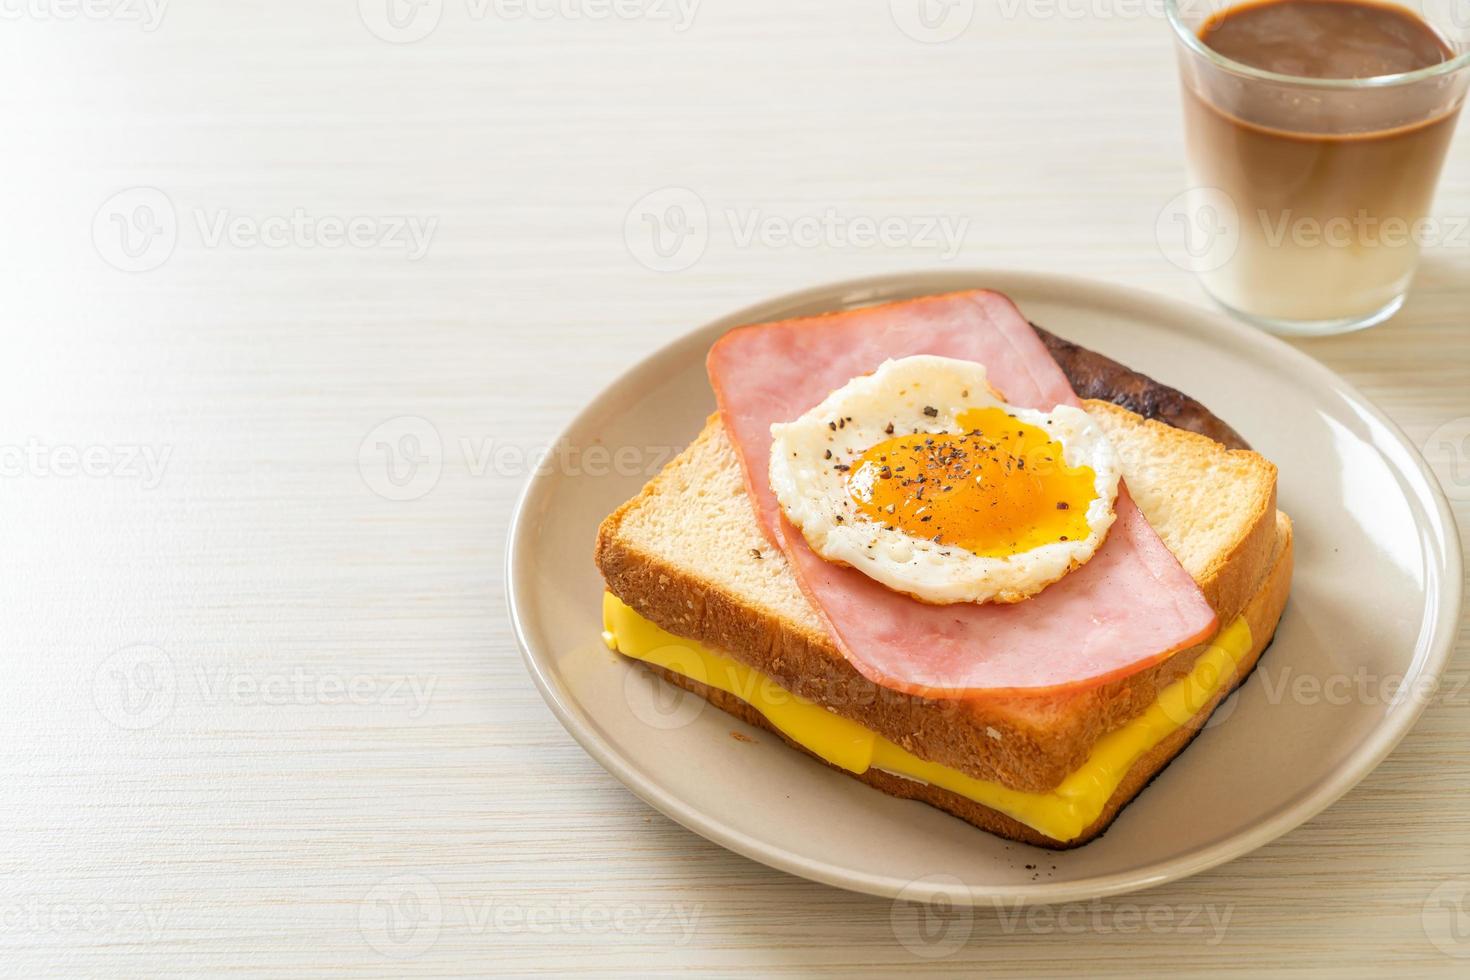 pane tostato con prosciutto cotto e uovo fritto con salsiccia di maiale pork foto